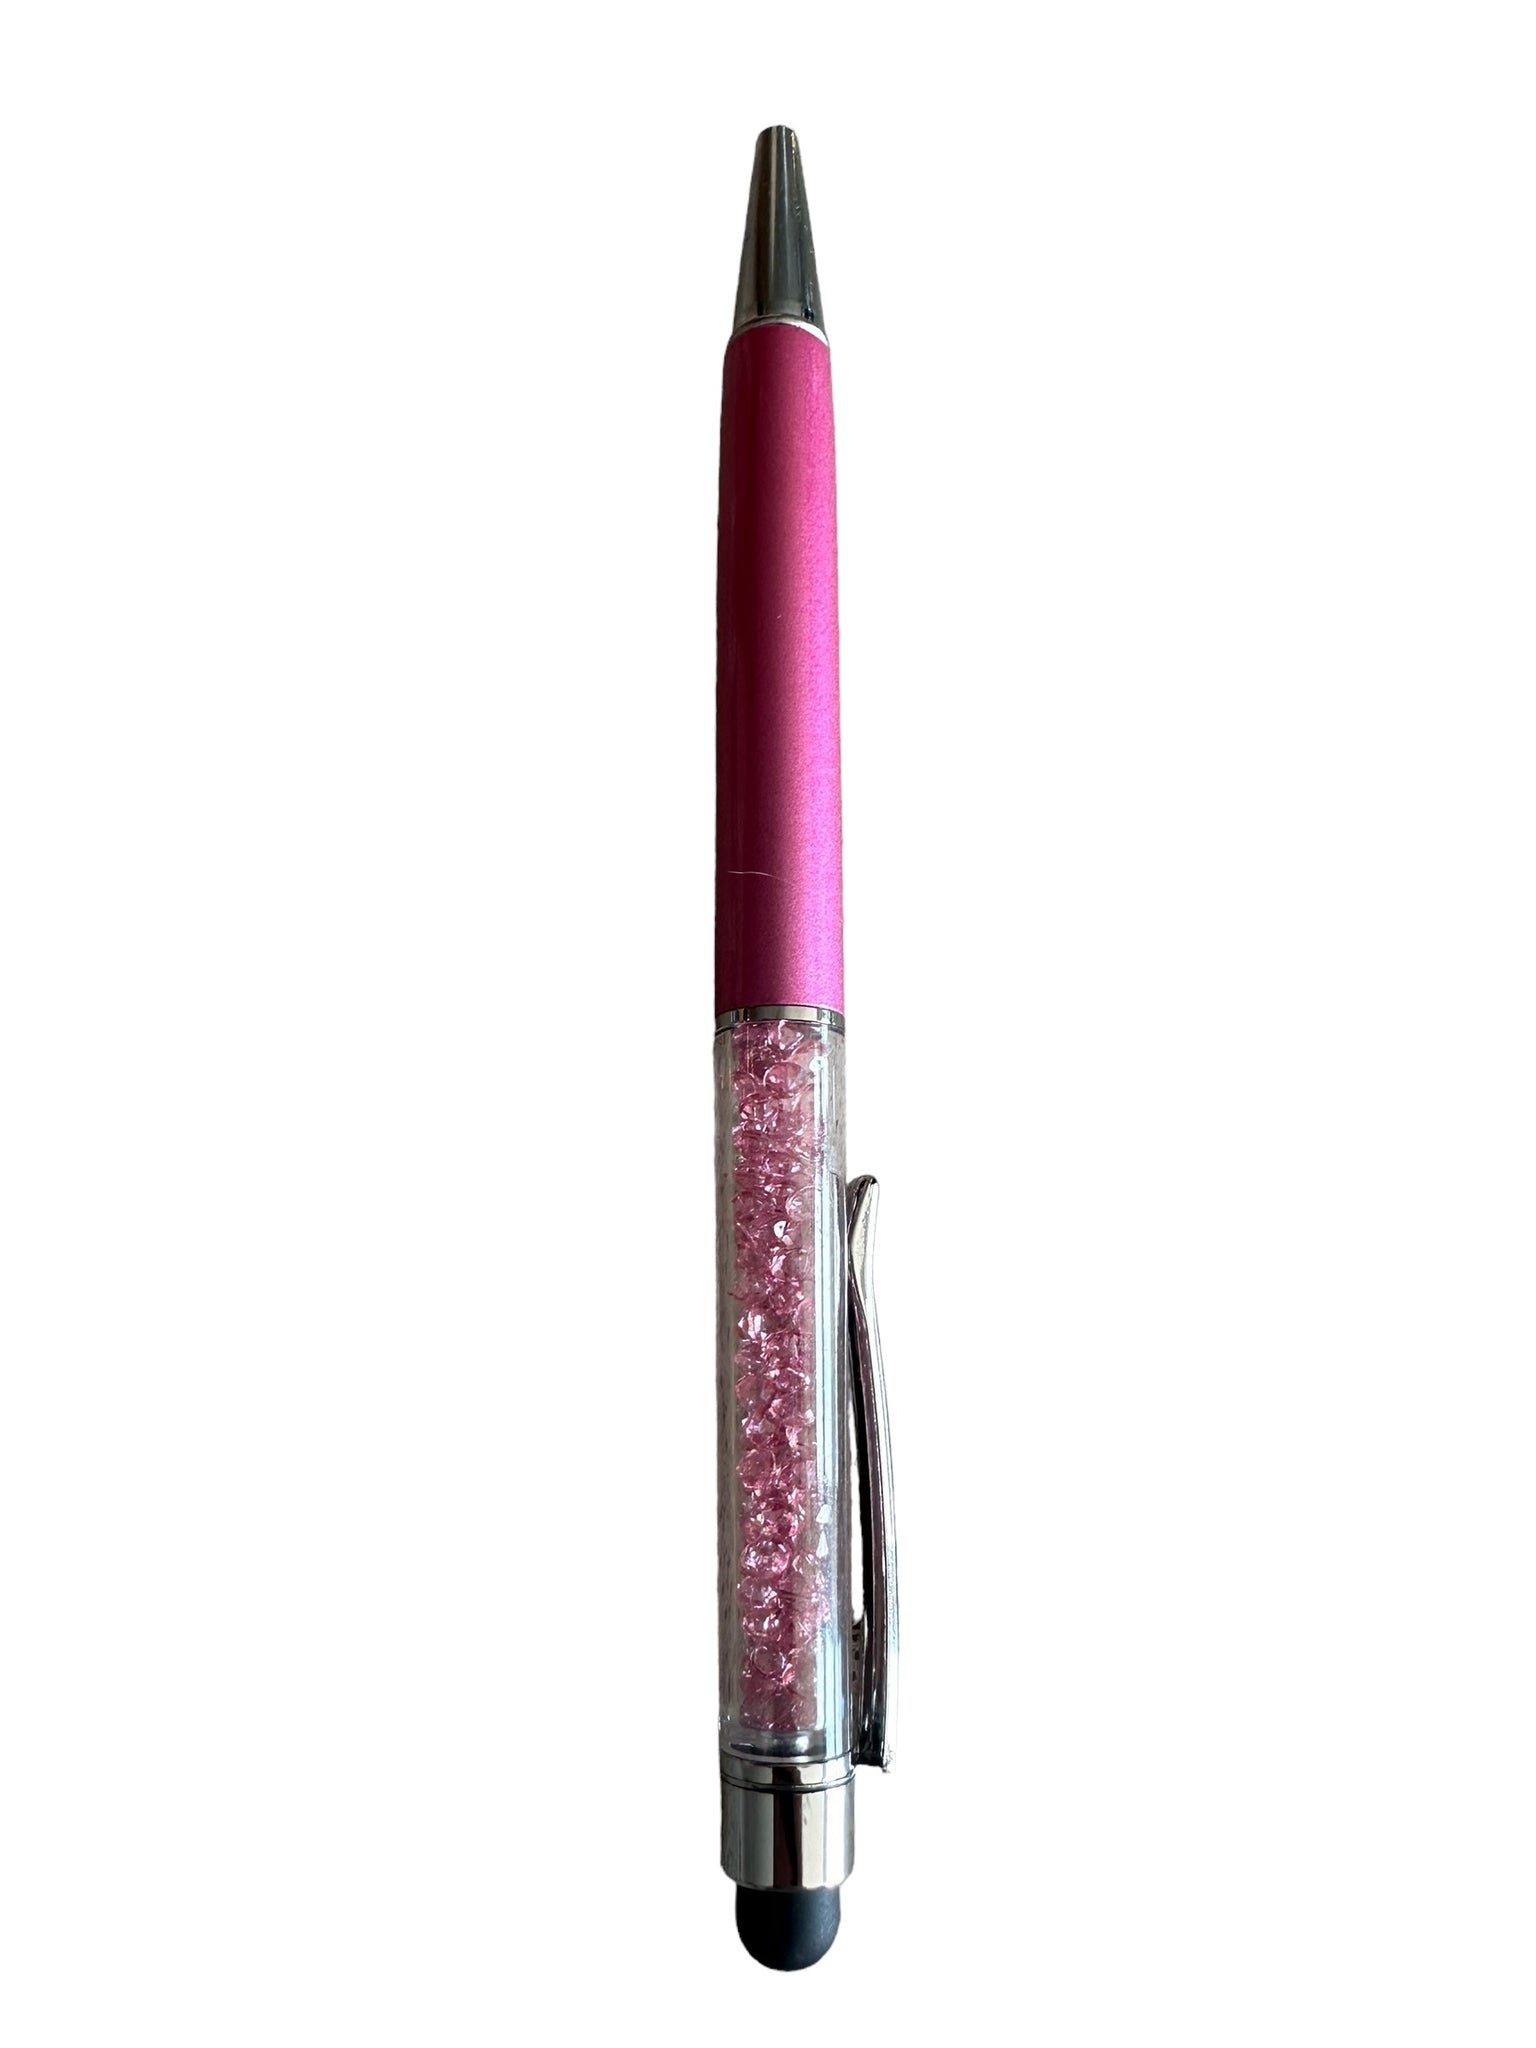 Glitterpenner med stylus funksjon flere farger.